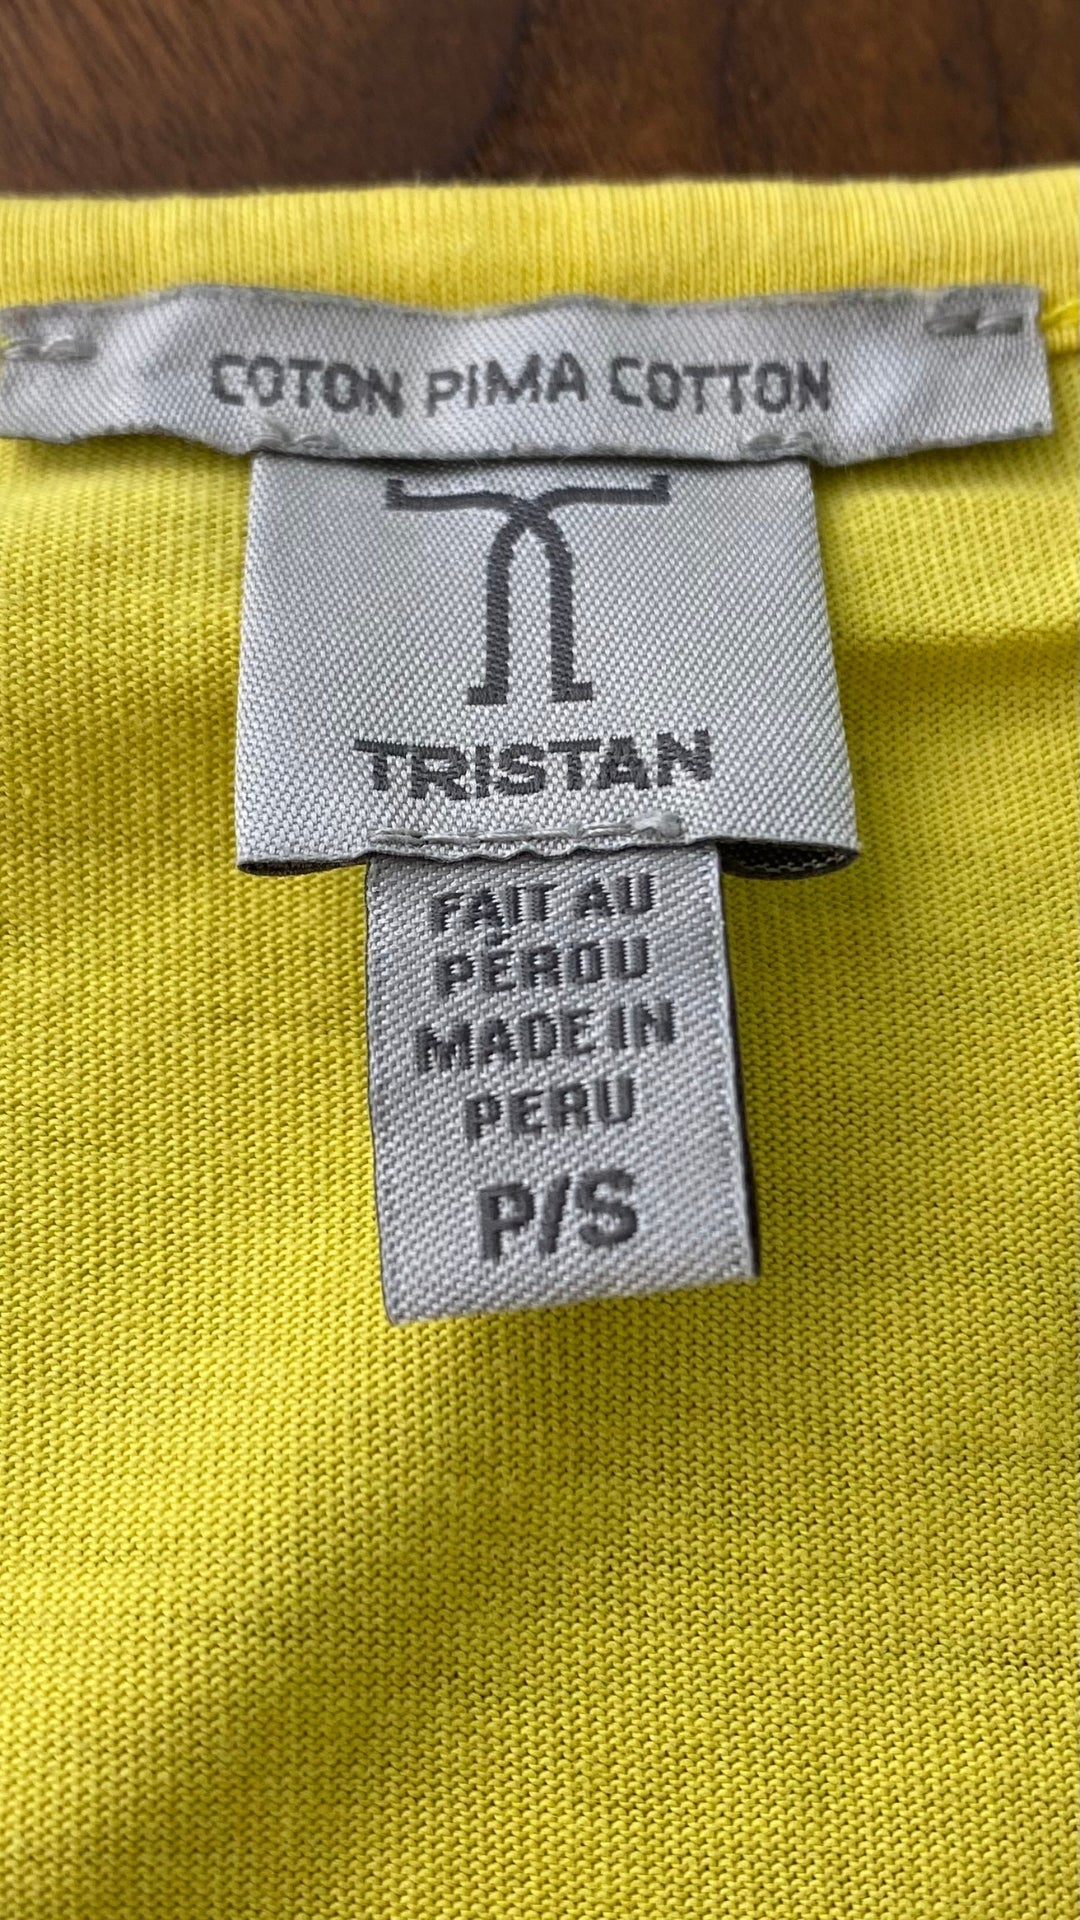 Camisole jaune en coton pima Tristan, taille small. Vue de l'étiquette de marque et taille.